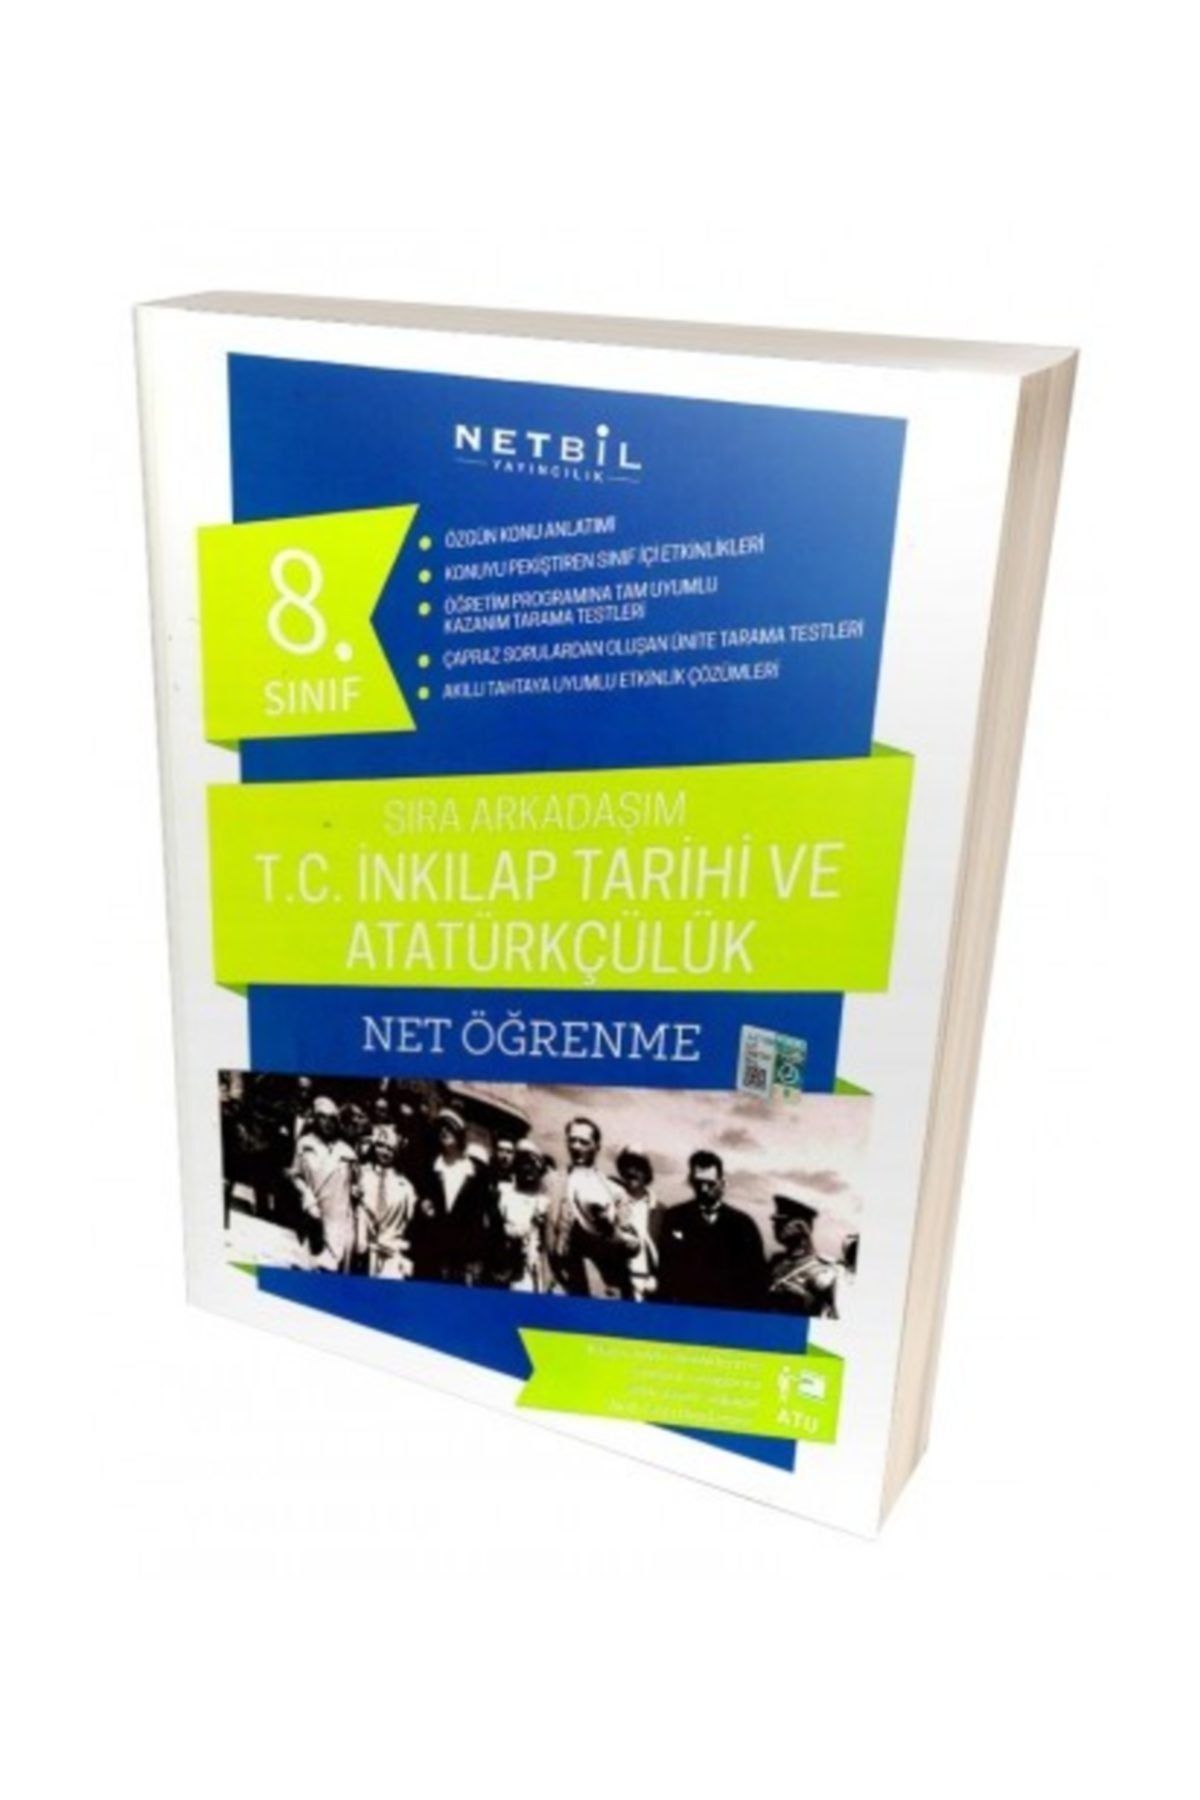 Netbil Yayınları 8.sınıf T.c. Inkılap Tarihi Ve Atatürkçülük Sıra Arkadaşım Net Öğrenme Yeni 2019